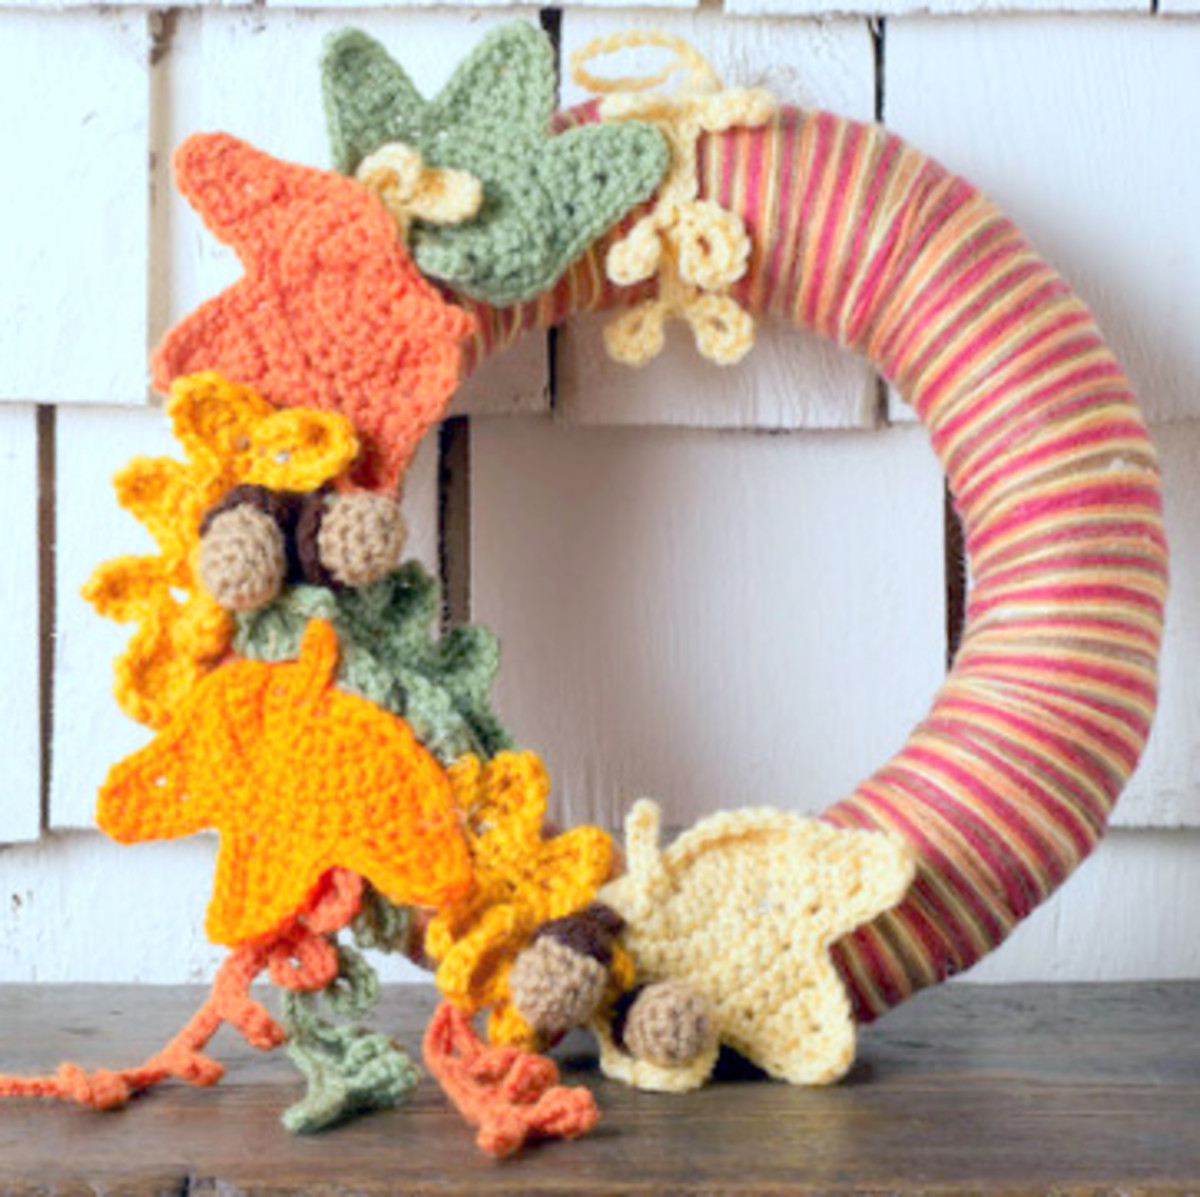 Yarn-wrapped wreath